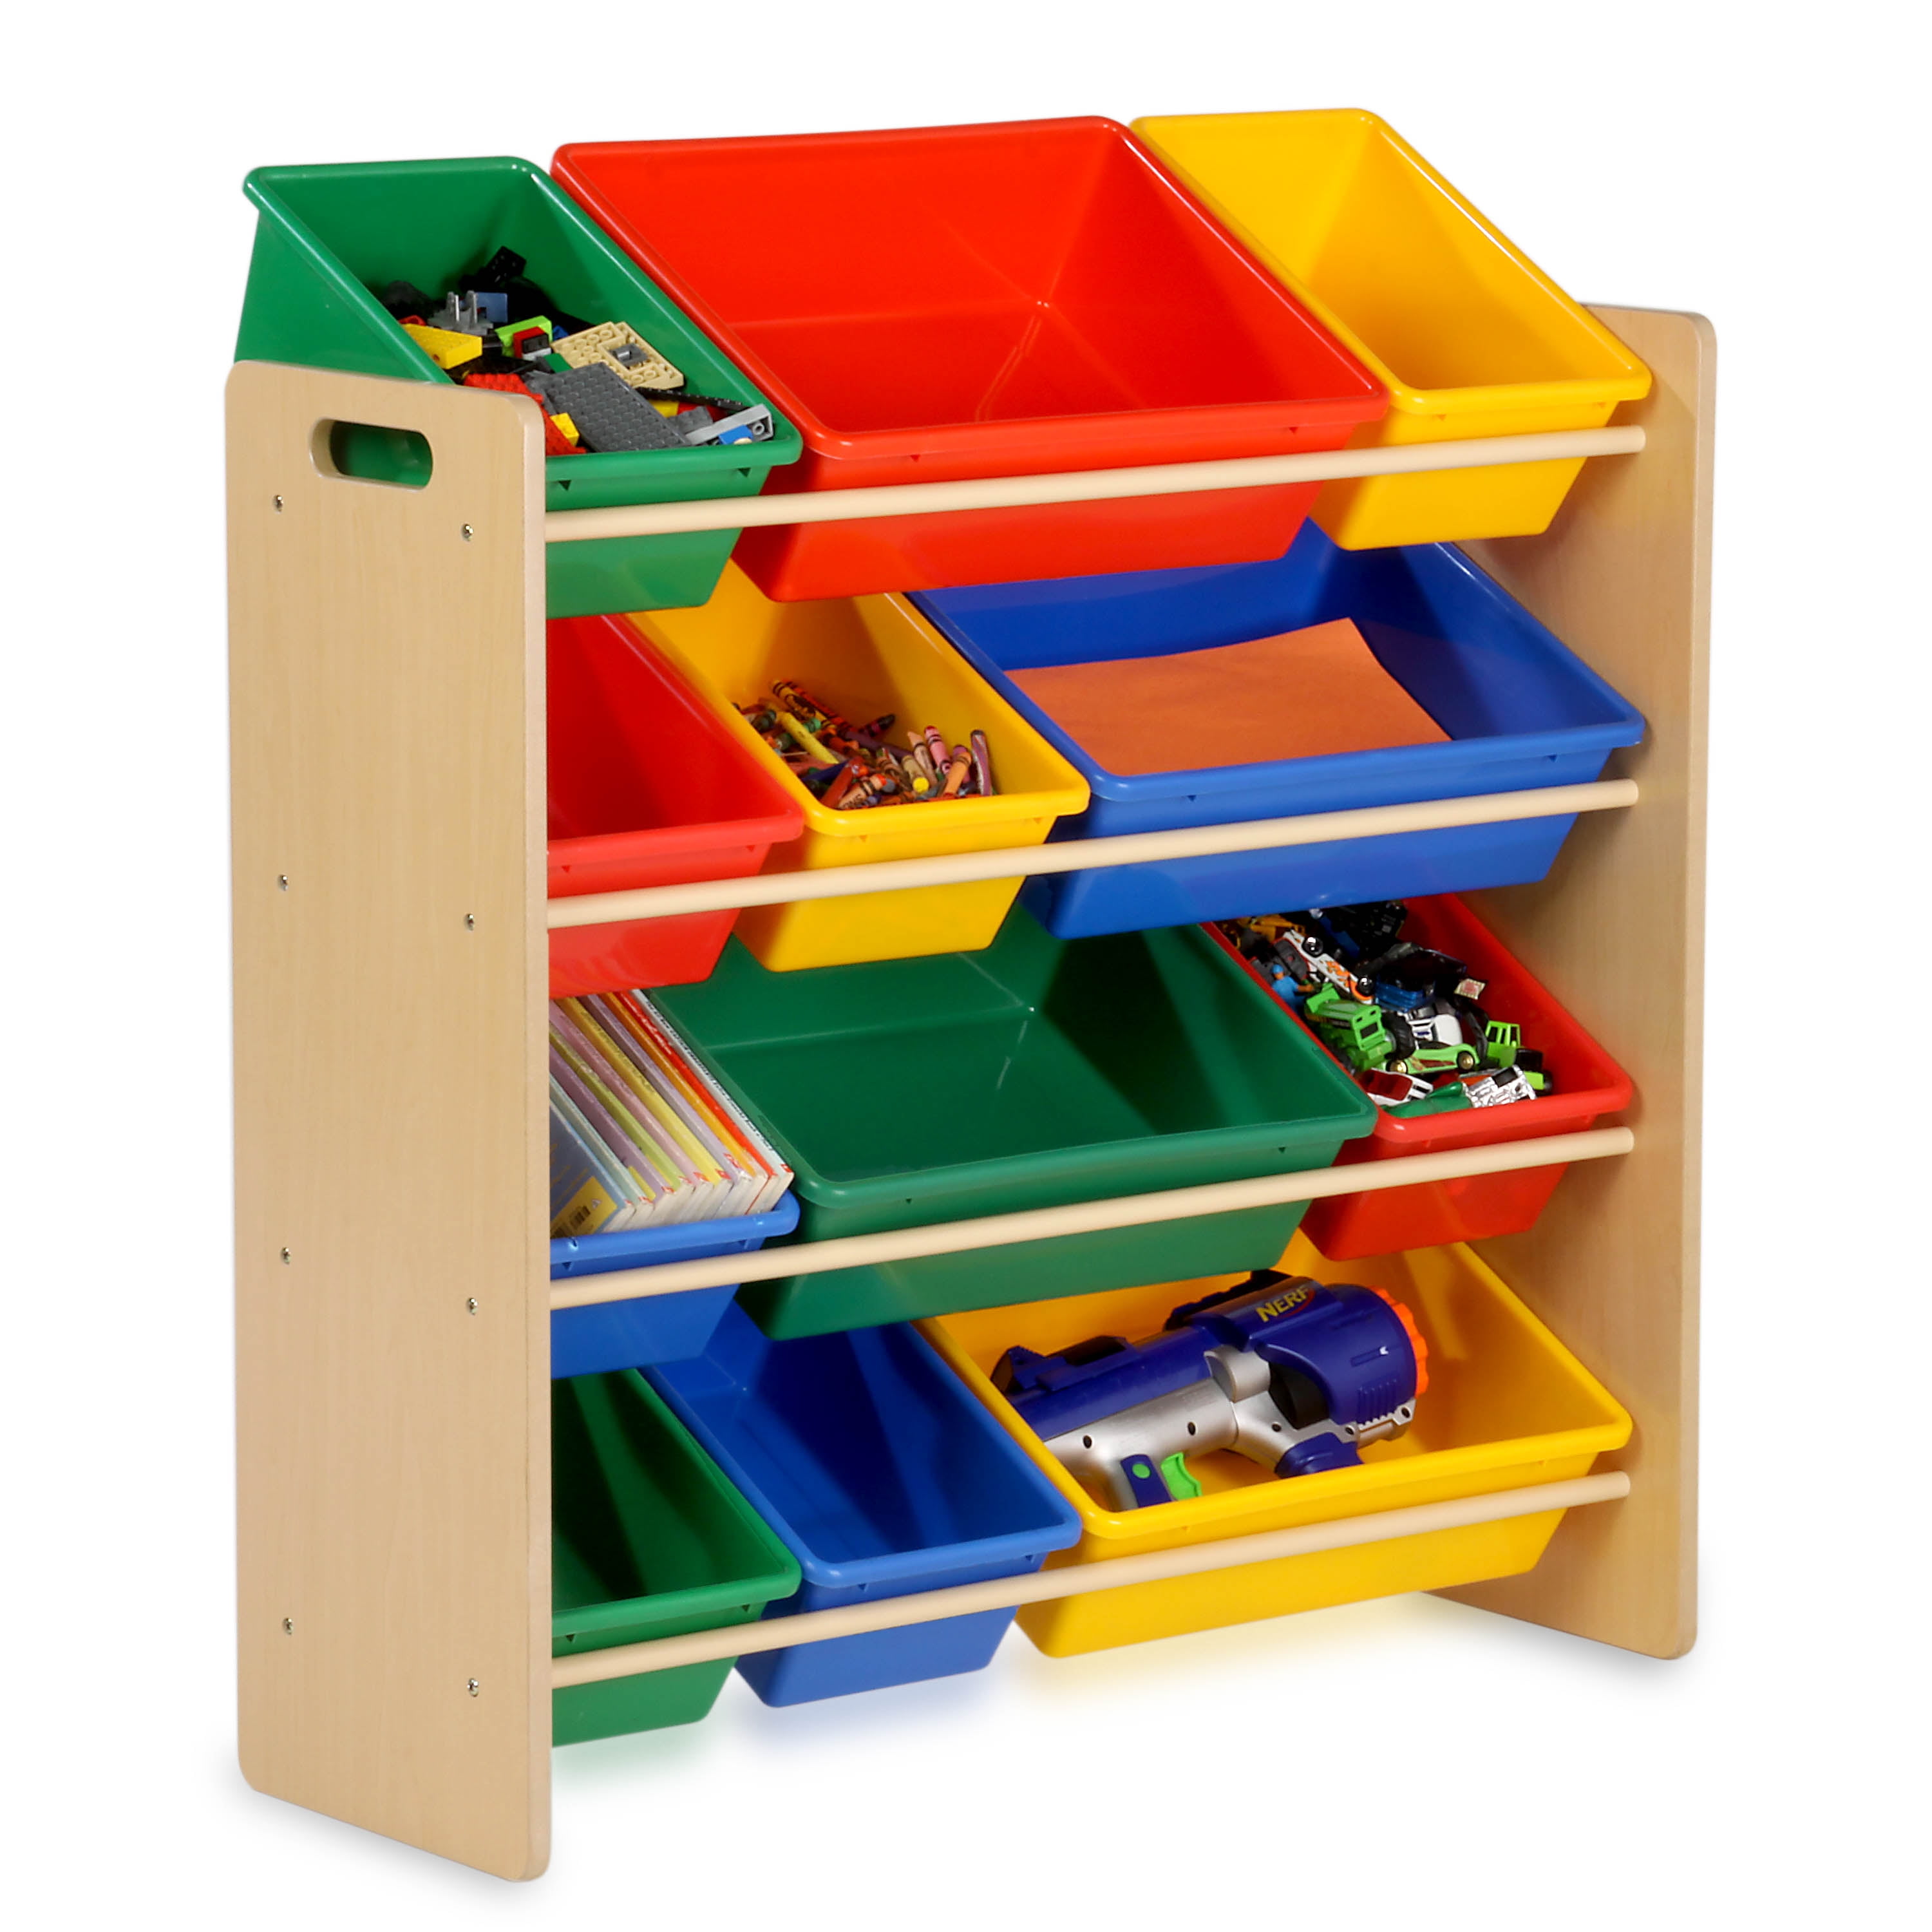 Honey-Can-Do Kids Toy Storage Organizer with Plastic Bins, Gray